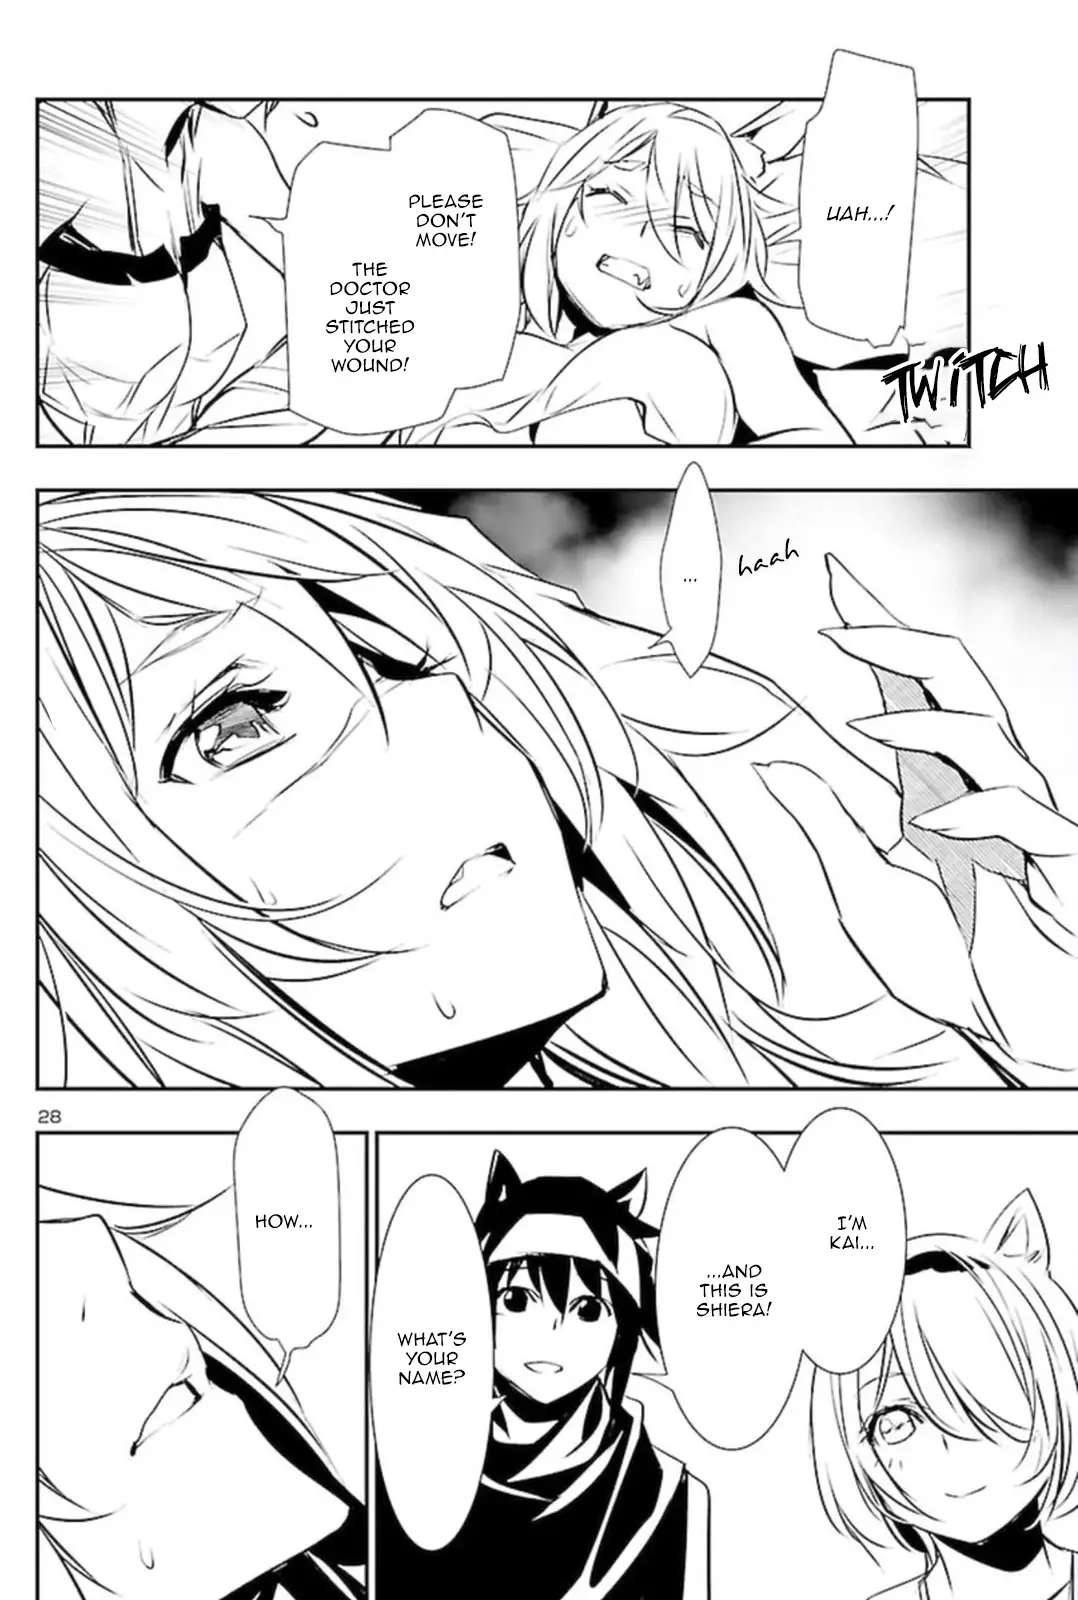 Shinju no Nectar - 53 page 28